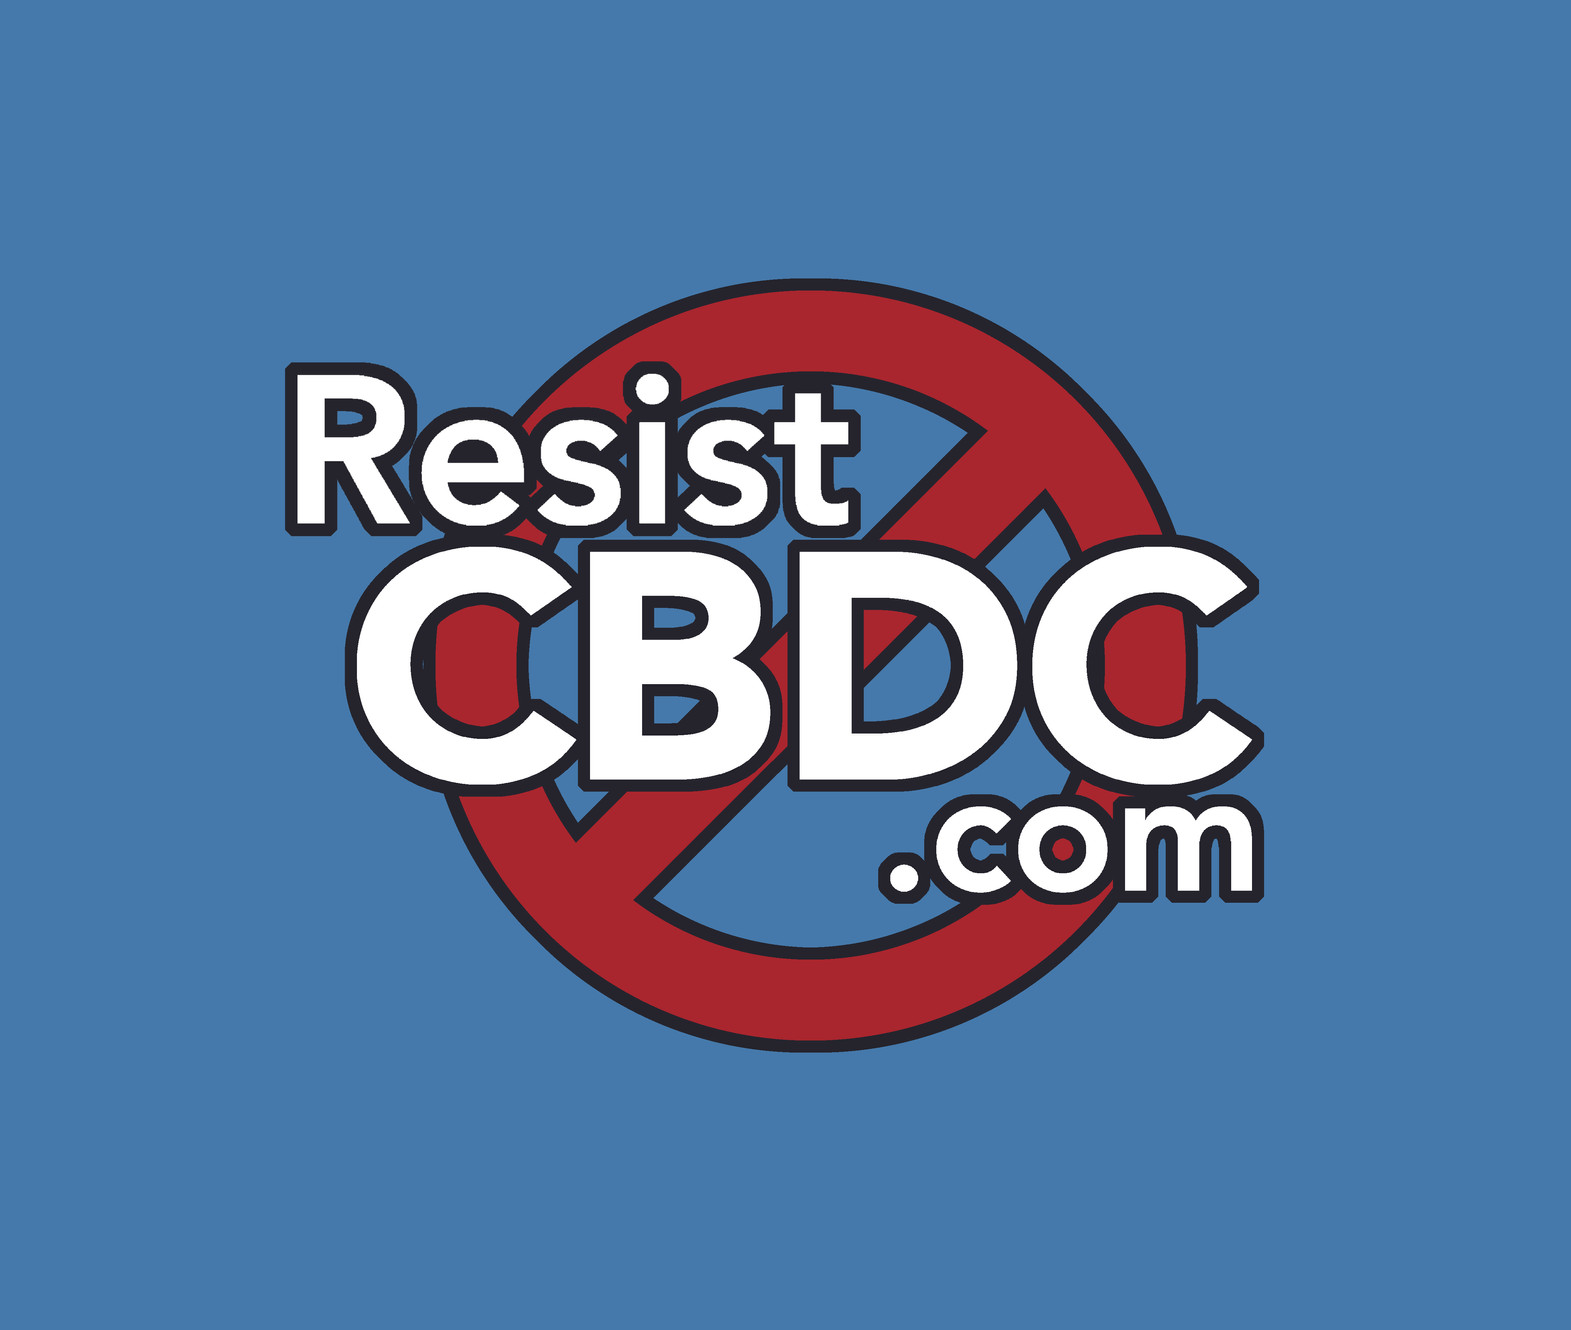 www.resistcbdc.com